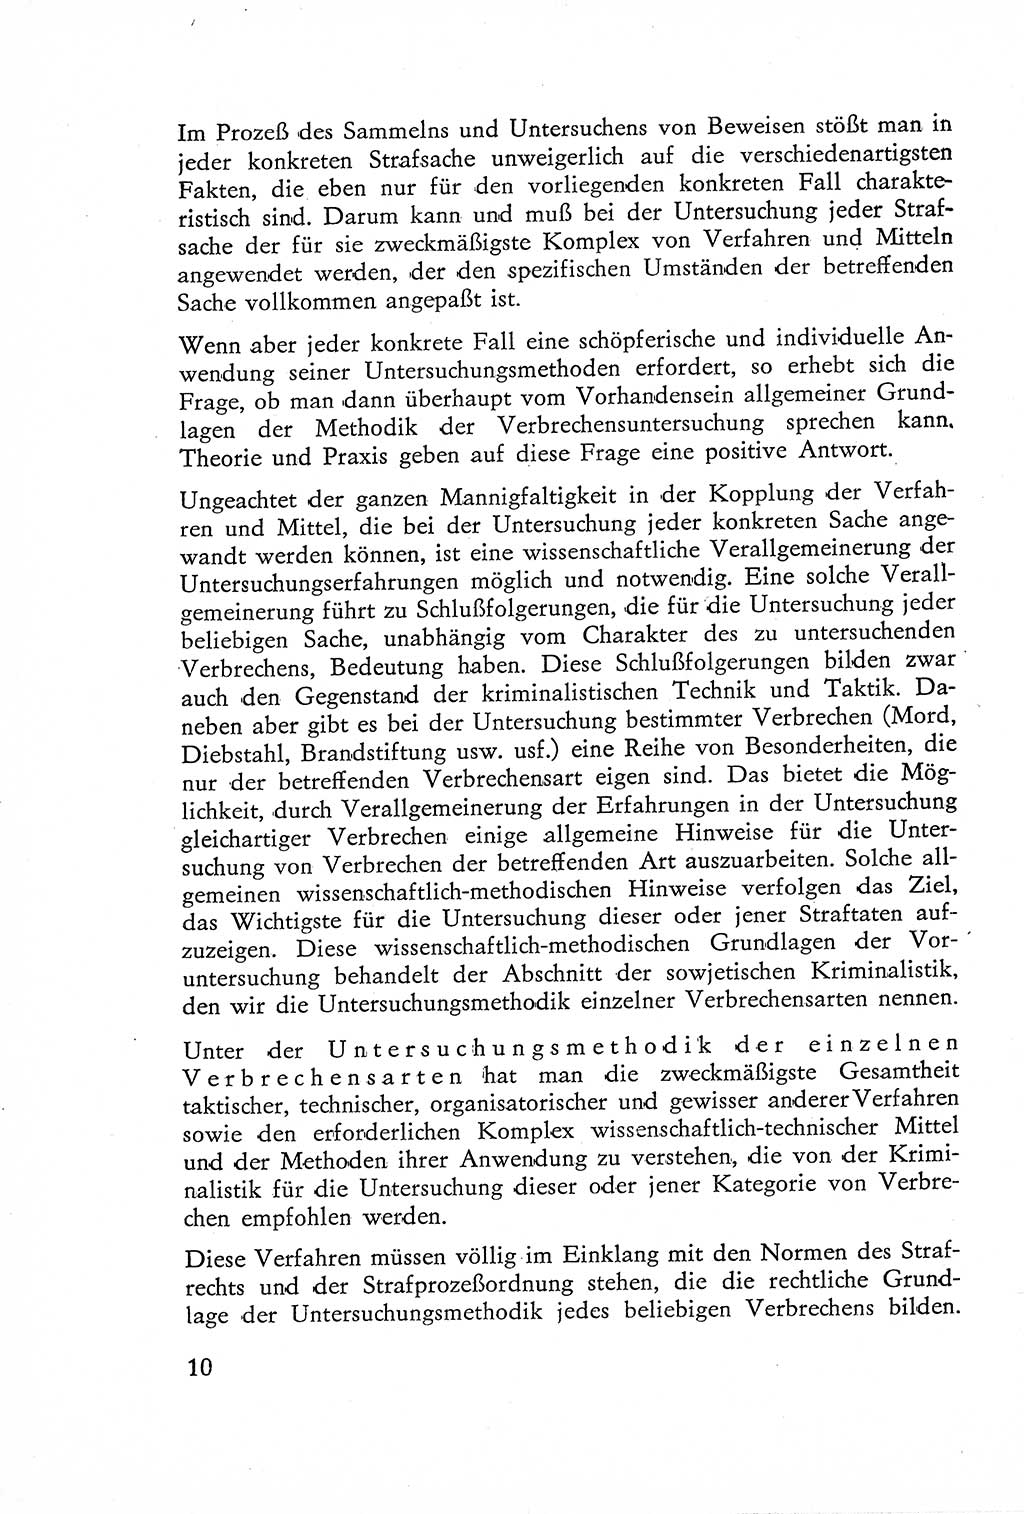 Die Untersuchung einzelner Verbrechensarten [Deutsche Demokratische Republik (DDR)] 1960, Seite 10 (Unters. Verbr.-Art. DDR 1960, S. 10)